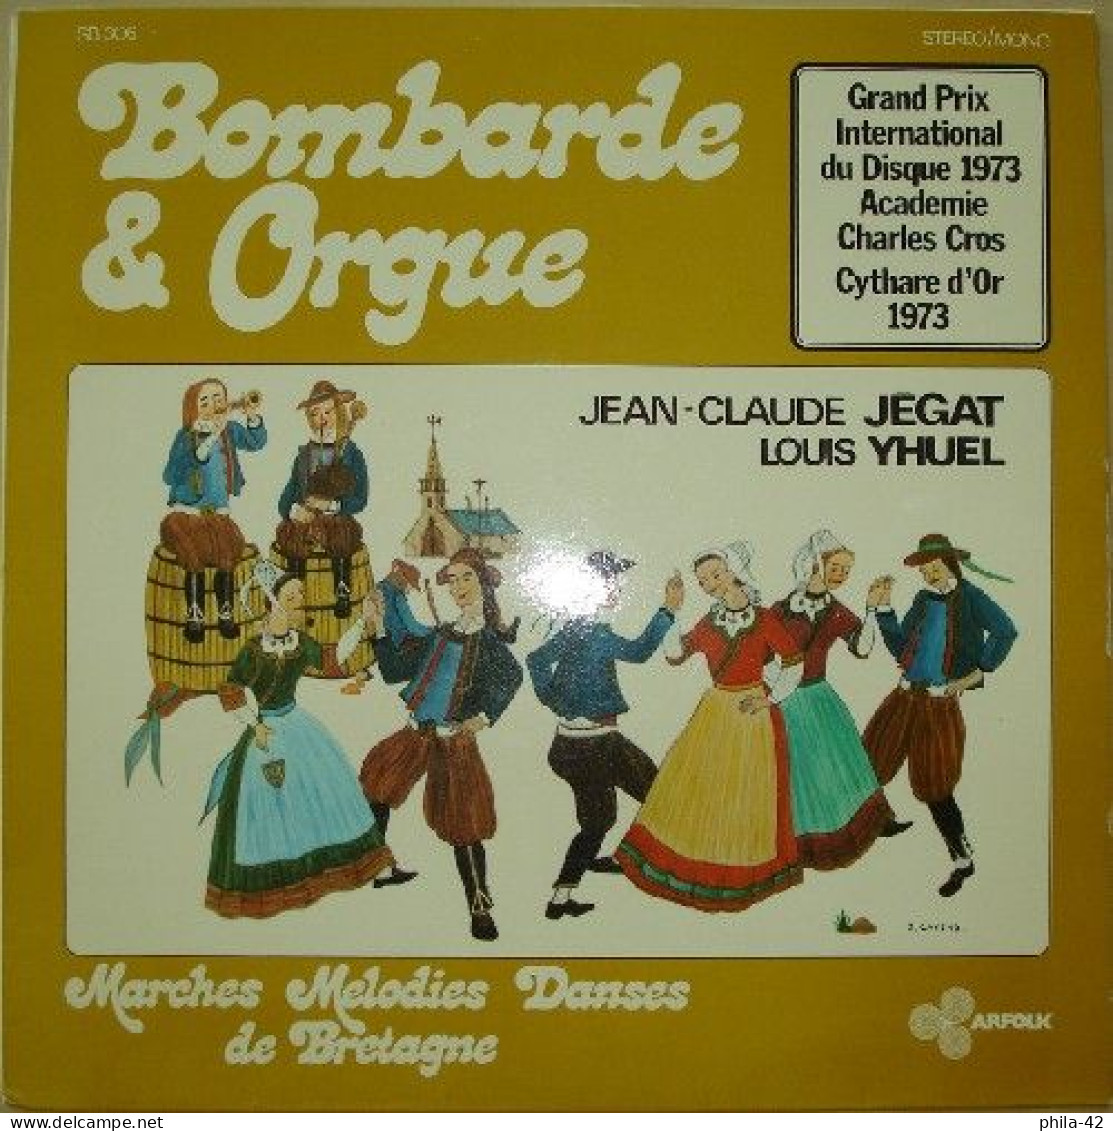 Bombarde Et Orgue 1973 -  Musiques De Bretagne - Disque Vinyle 33 Tours - ARFOLK SB 306 - Wereldmuziek